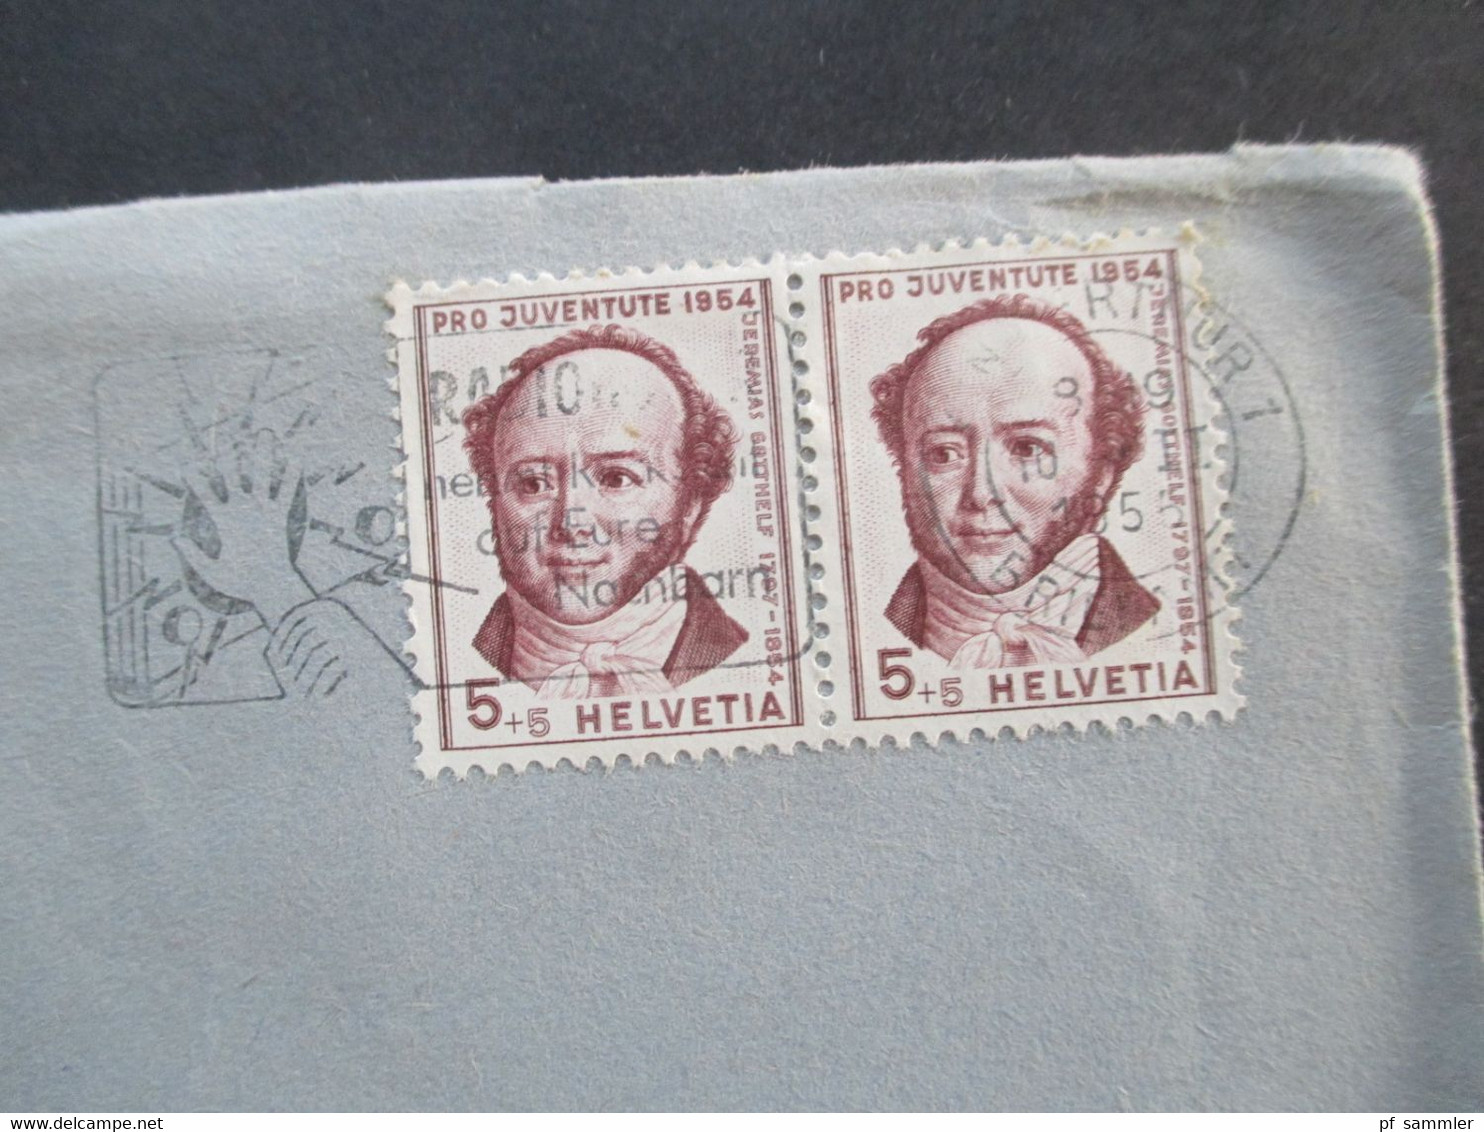 Schweiz 1955 Pro Juventute Nr. 602 MeF Waagerechtes Paar Umschlag Ed. Bühler & Co Winterthur Ortsbrief - Lettres & Documents